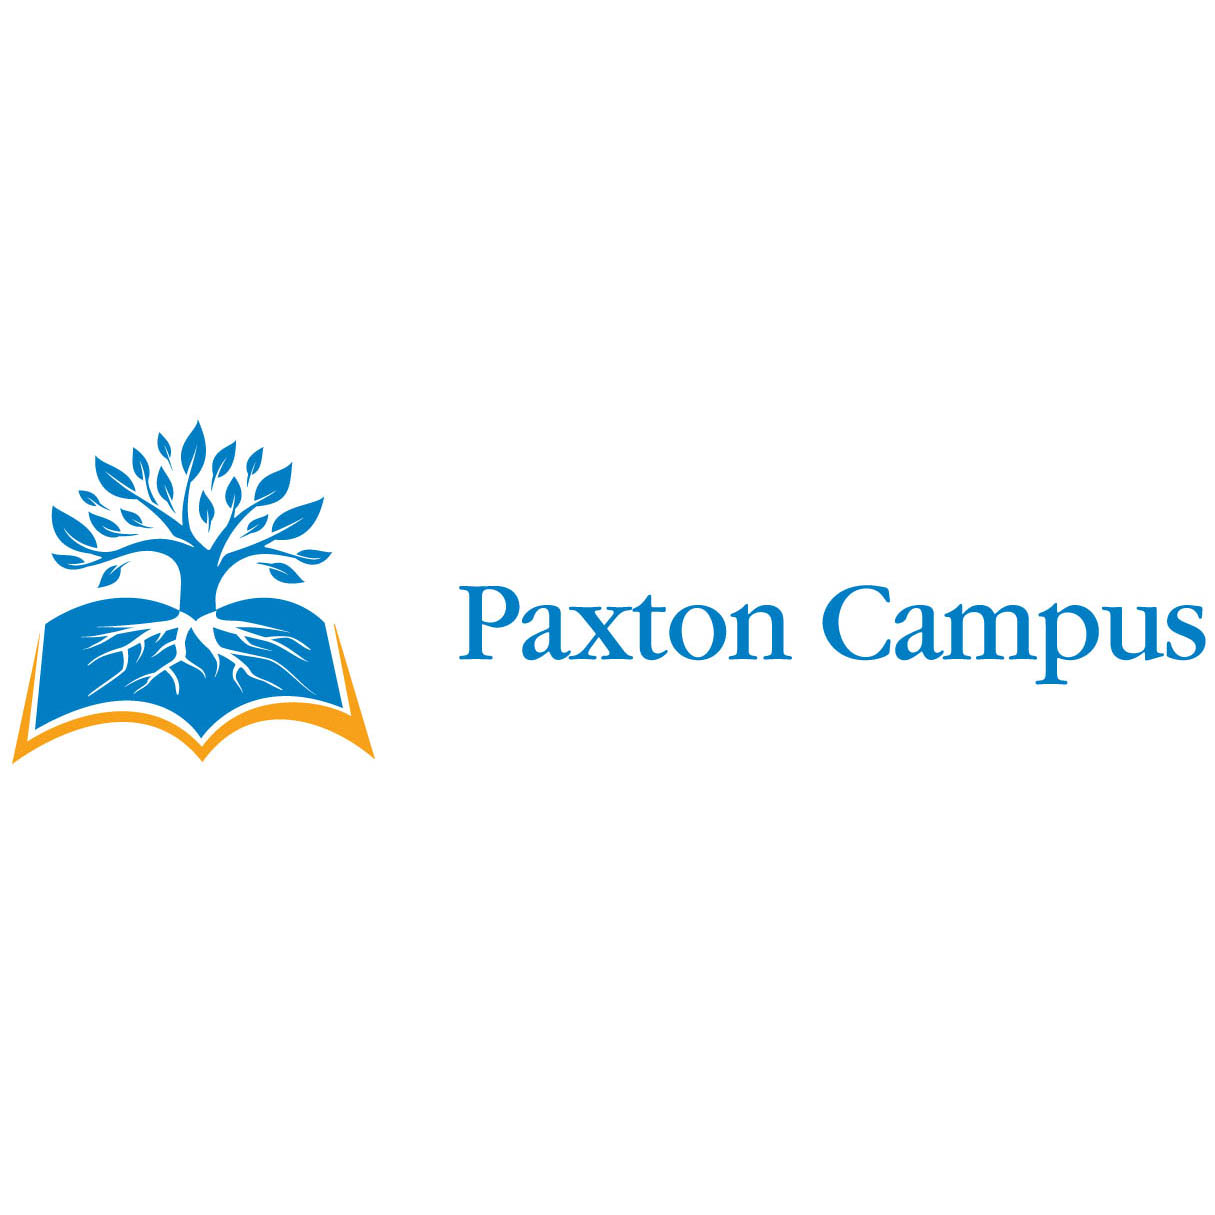 Paxton Campus